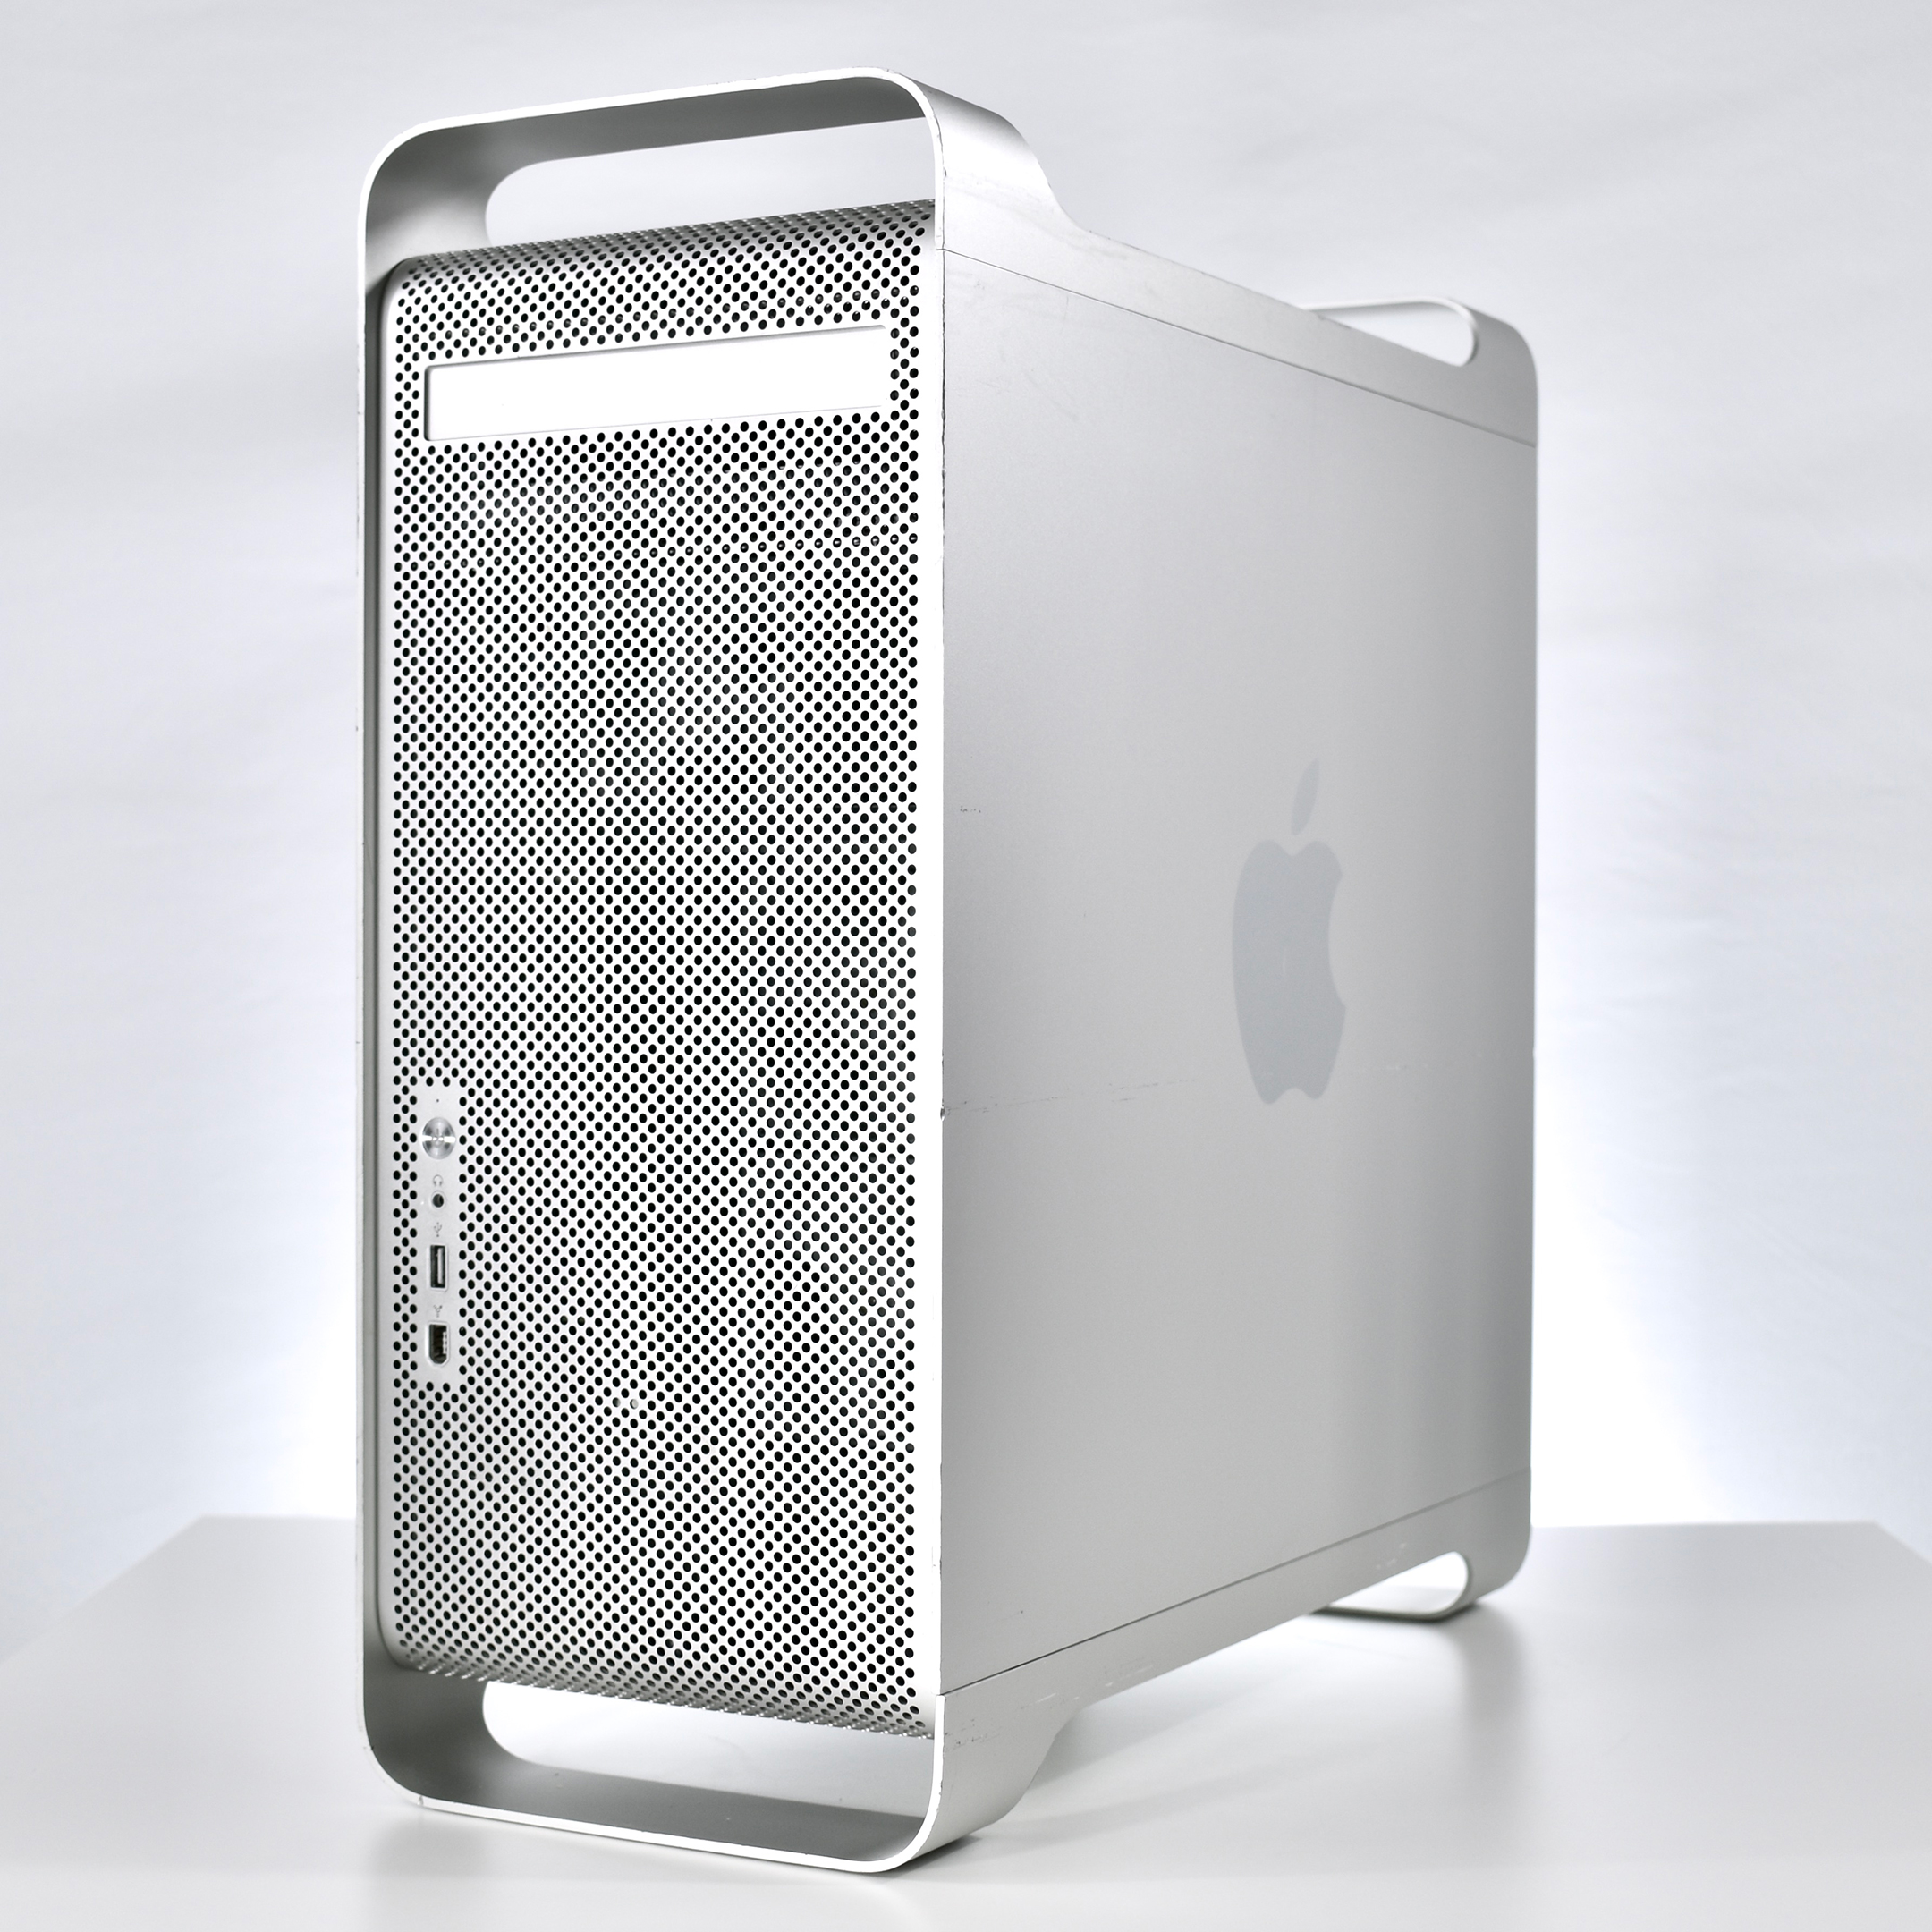 apple mac g5 hard drive